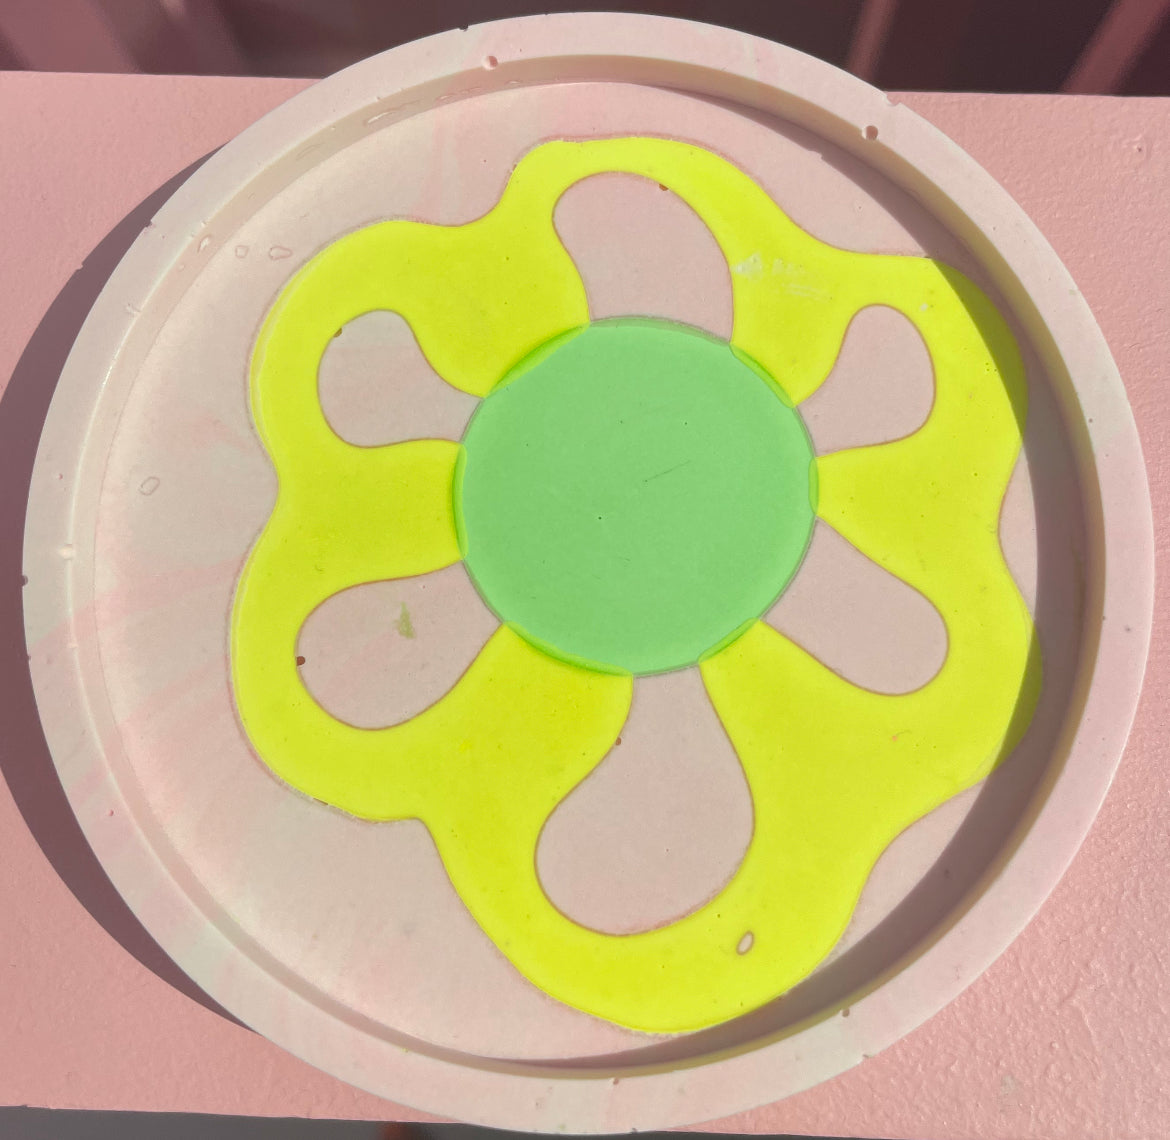 Coaster - Round (2 pieces) - Flower Power 9